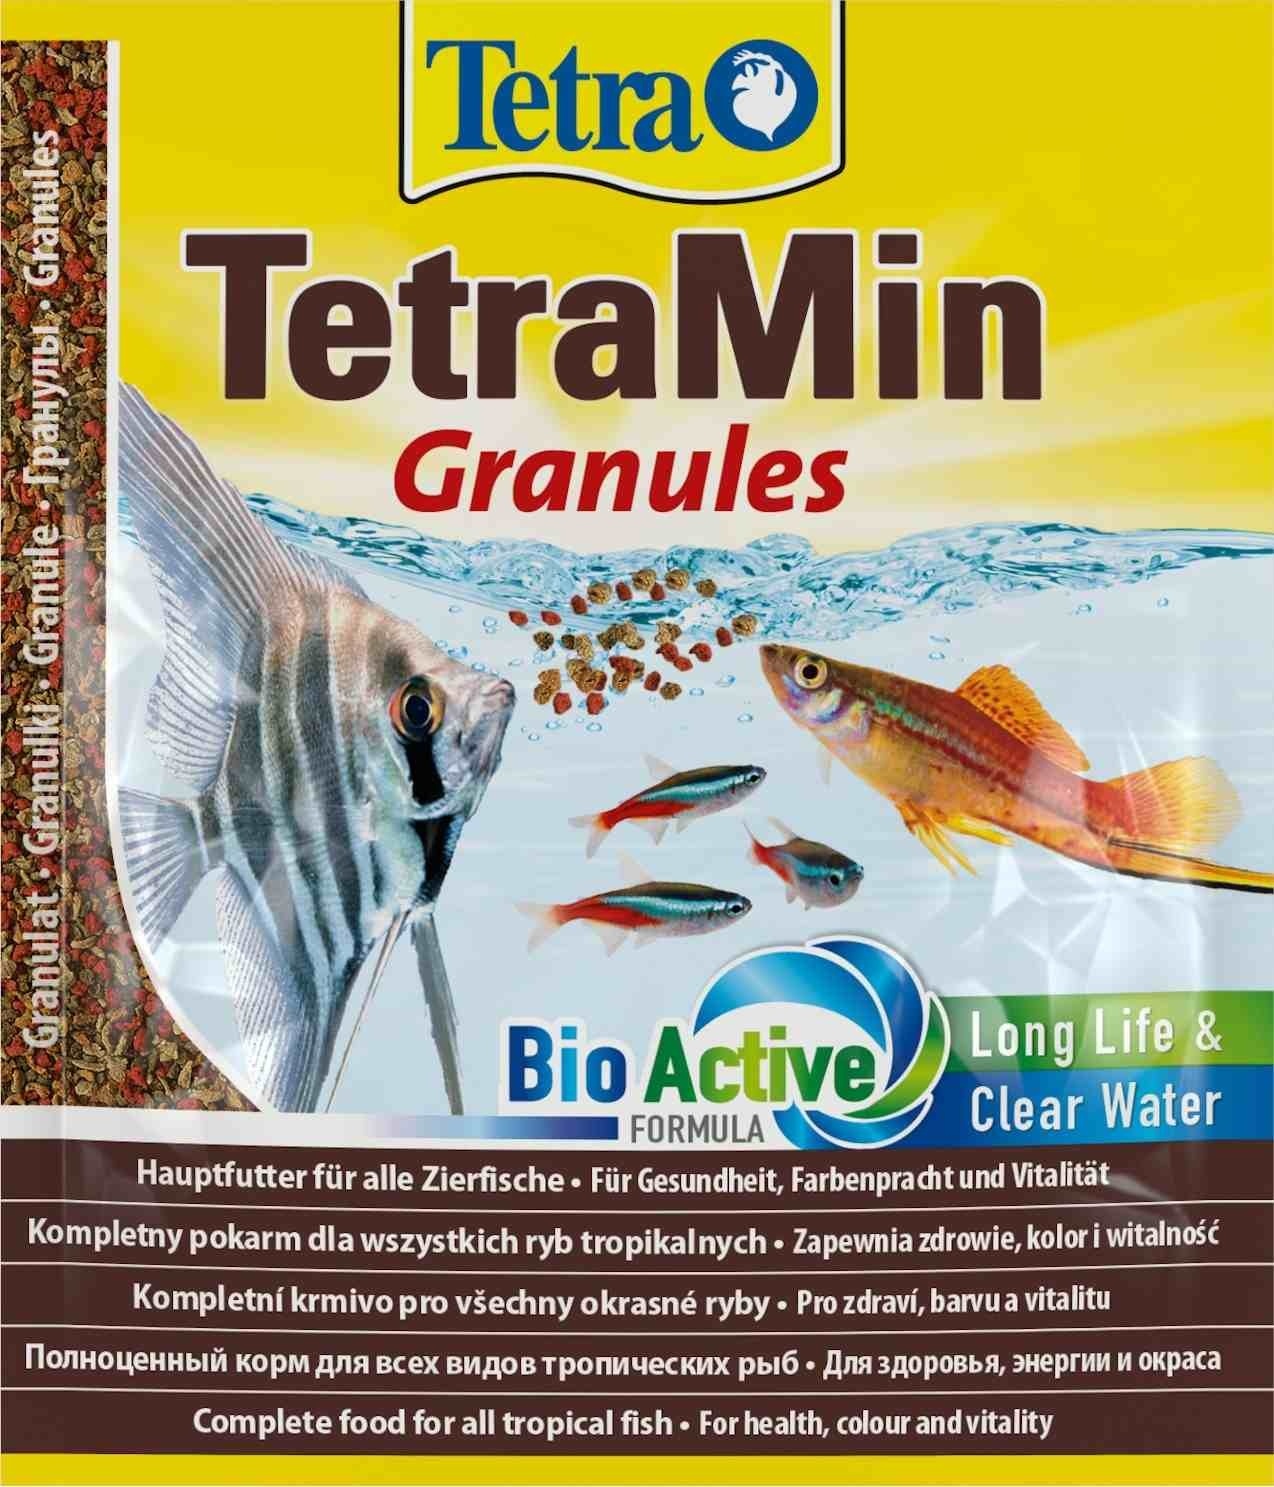 Tetra (корма) Tetra (корма) корм для всех видов тропических рыб. гранулы TetraMin Granules (15 г) tetra корма tetra корма корм для всех видов крупных рыб крупные гранулы 82 г